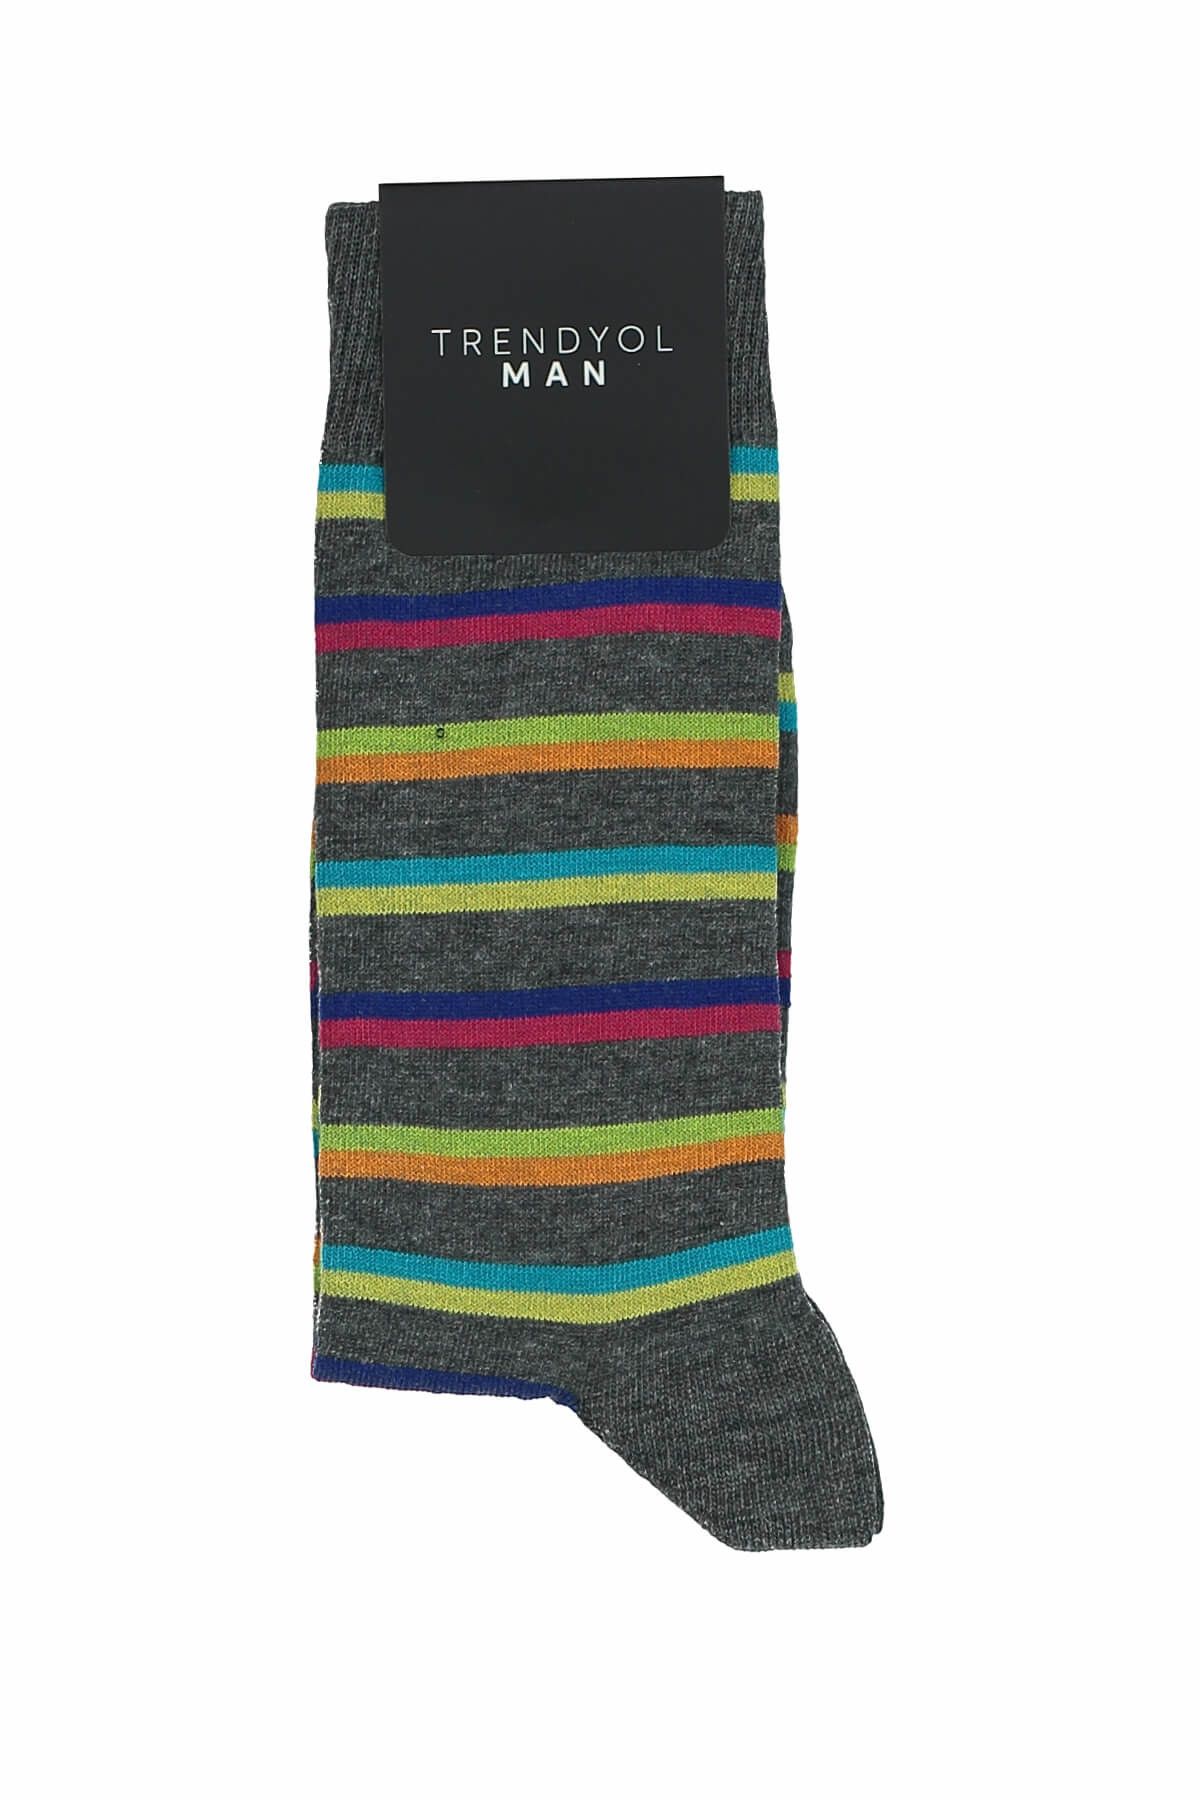 TRENDYOL MAN Gri Erkek Çorap - Renkli Çizgili